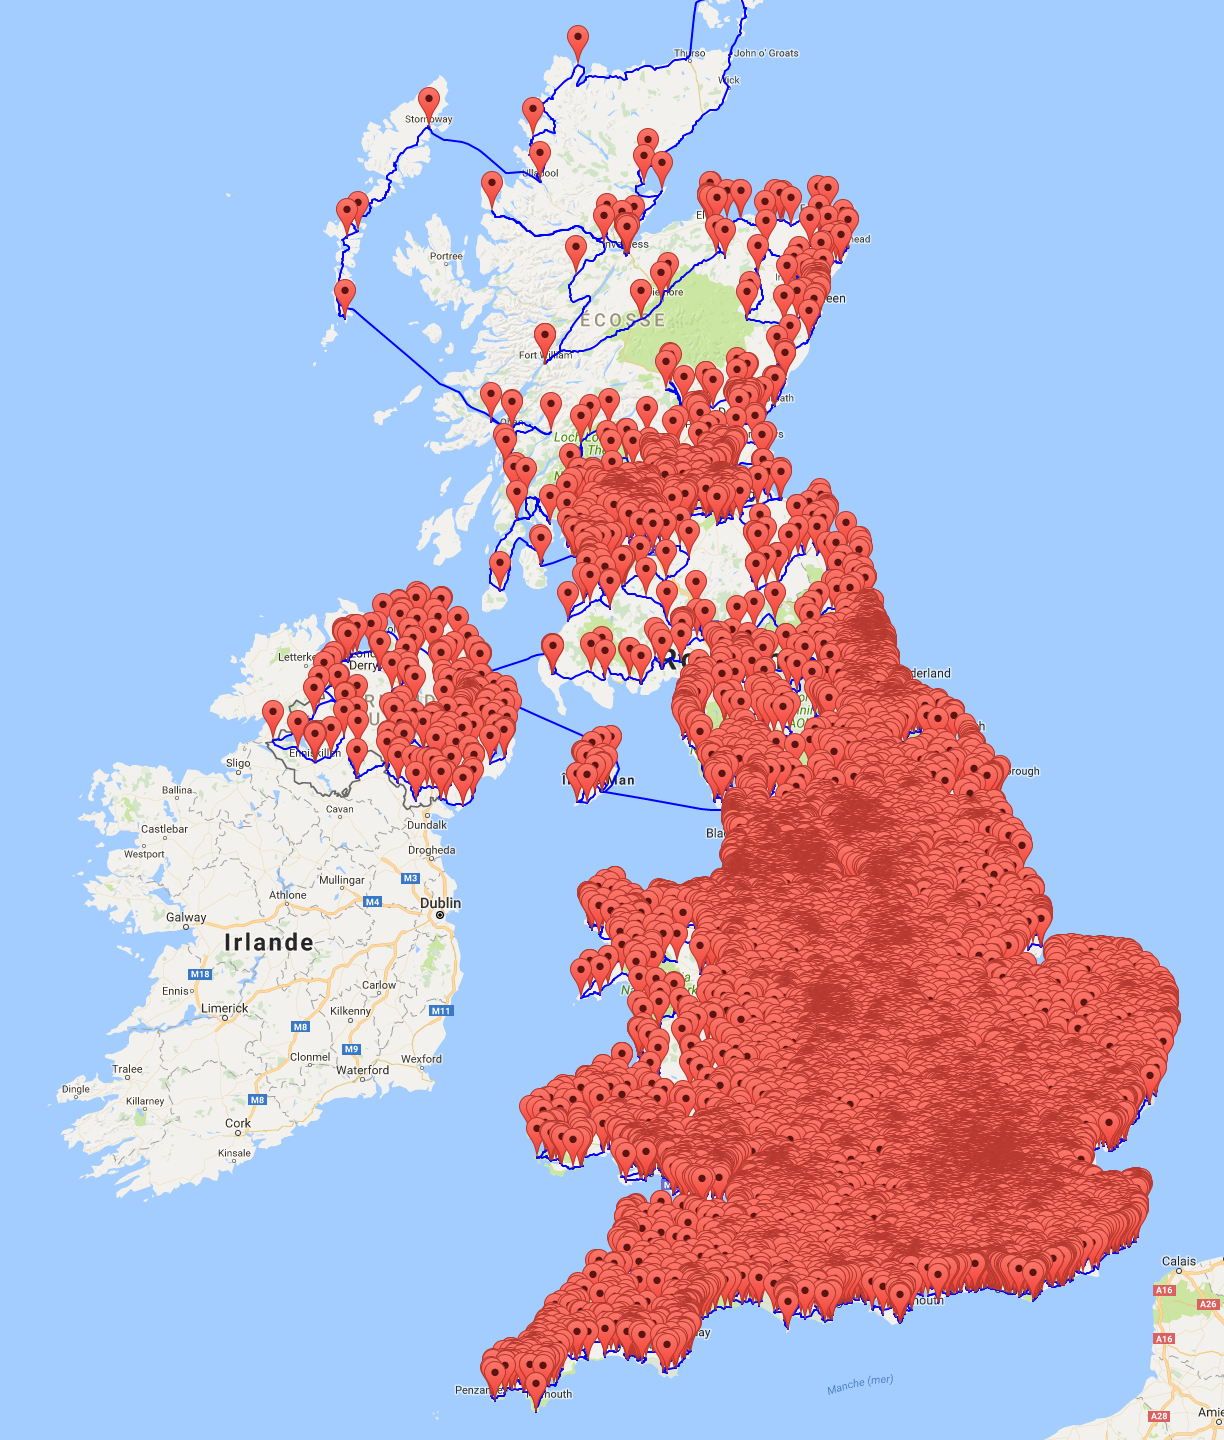 En 45 495km, vous pouvez visiter tous les pubs du Royaume-Uni